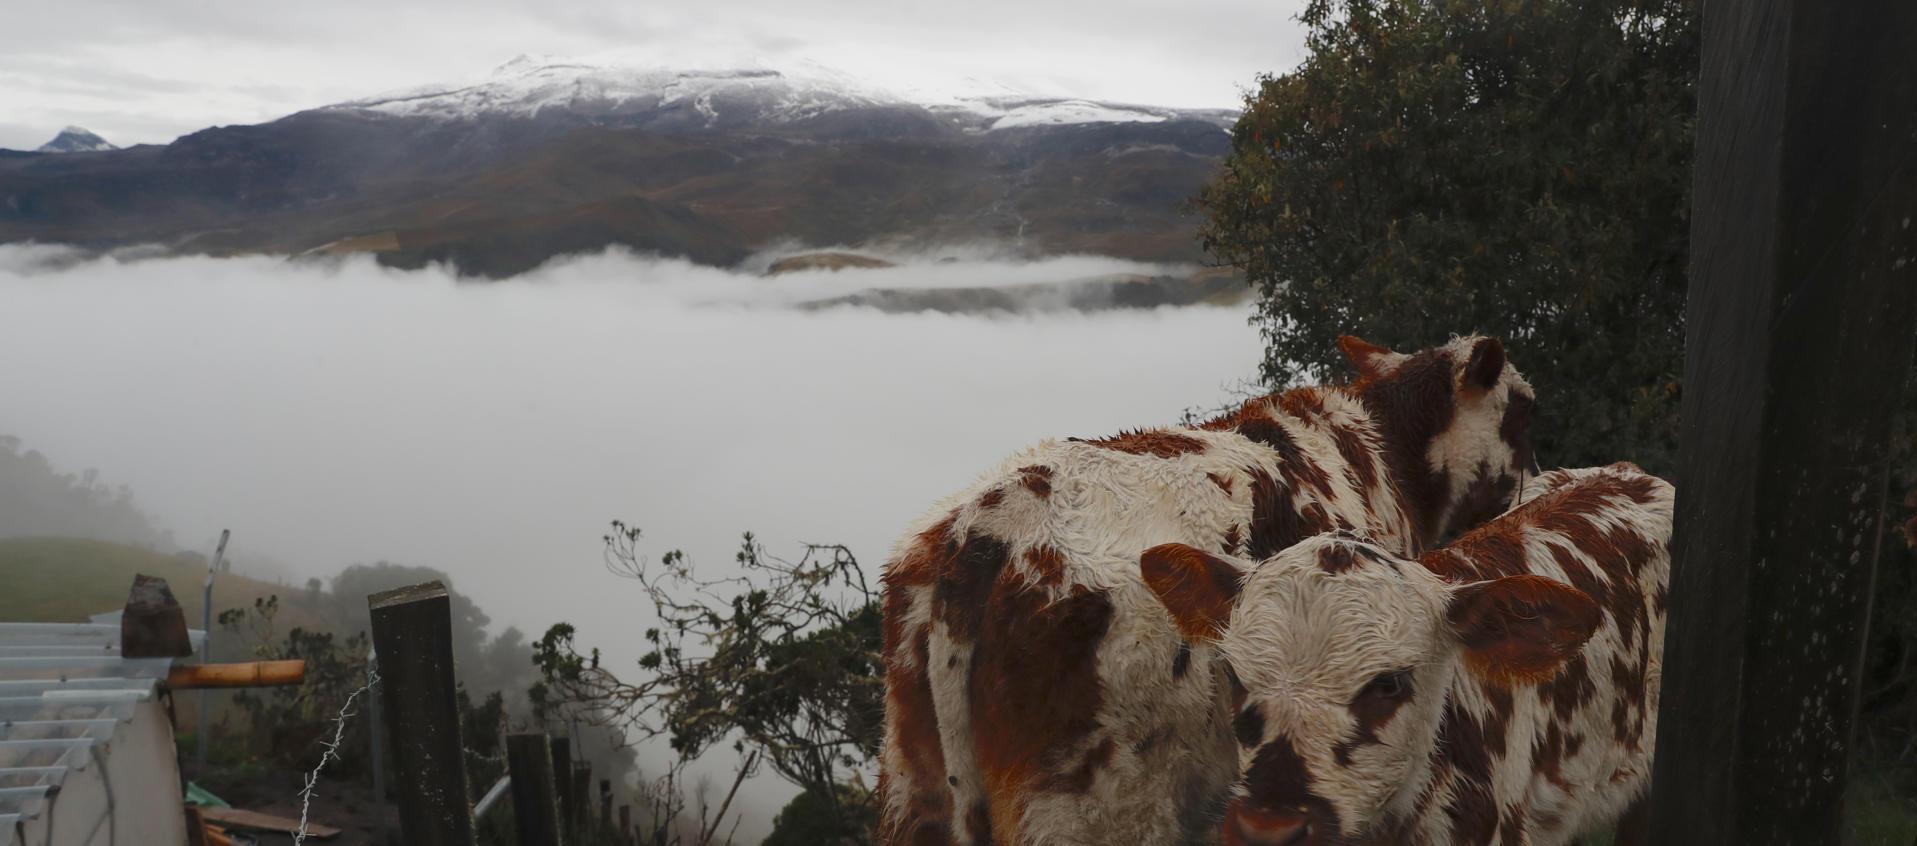 Vacas pastan en un terreno en Murillo, Tolima. Al fondo, el volcán Nevado del Ruiz